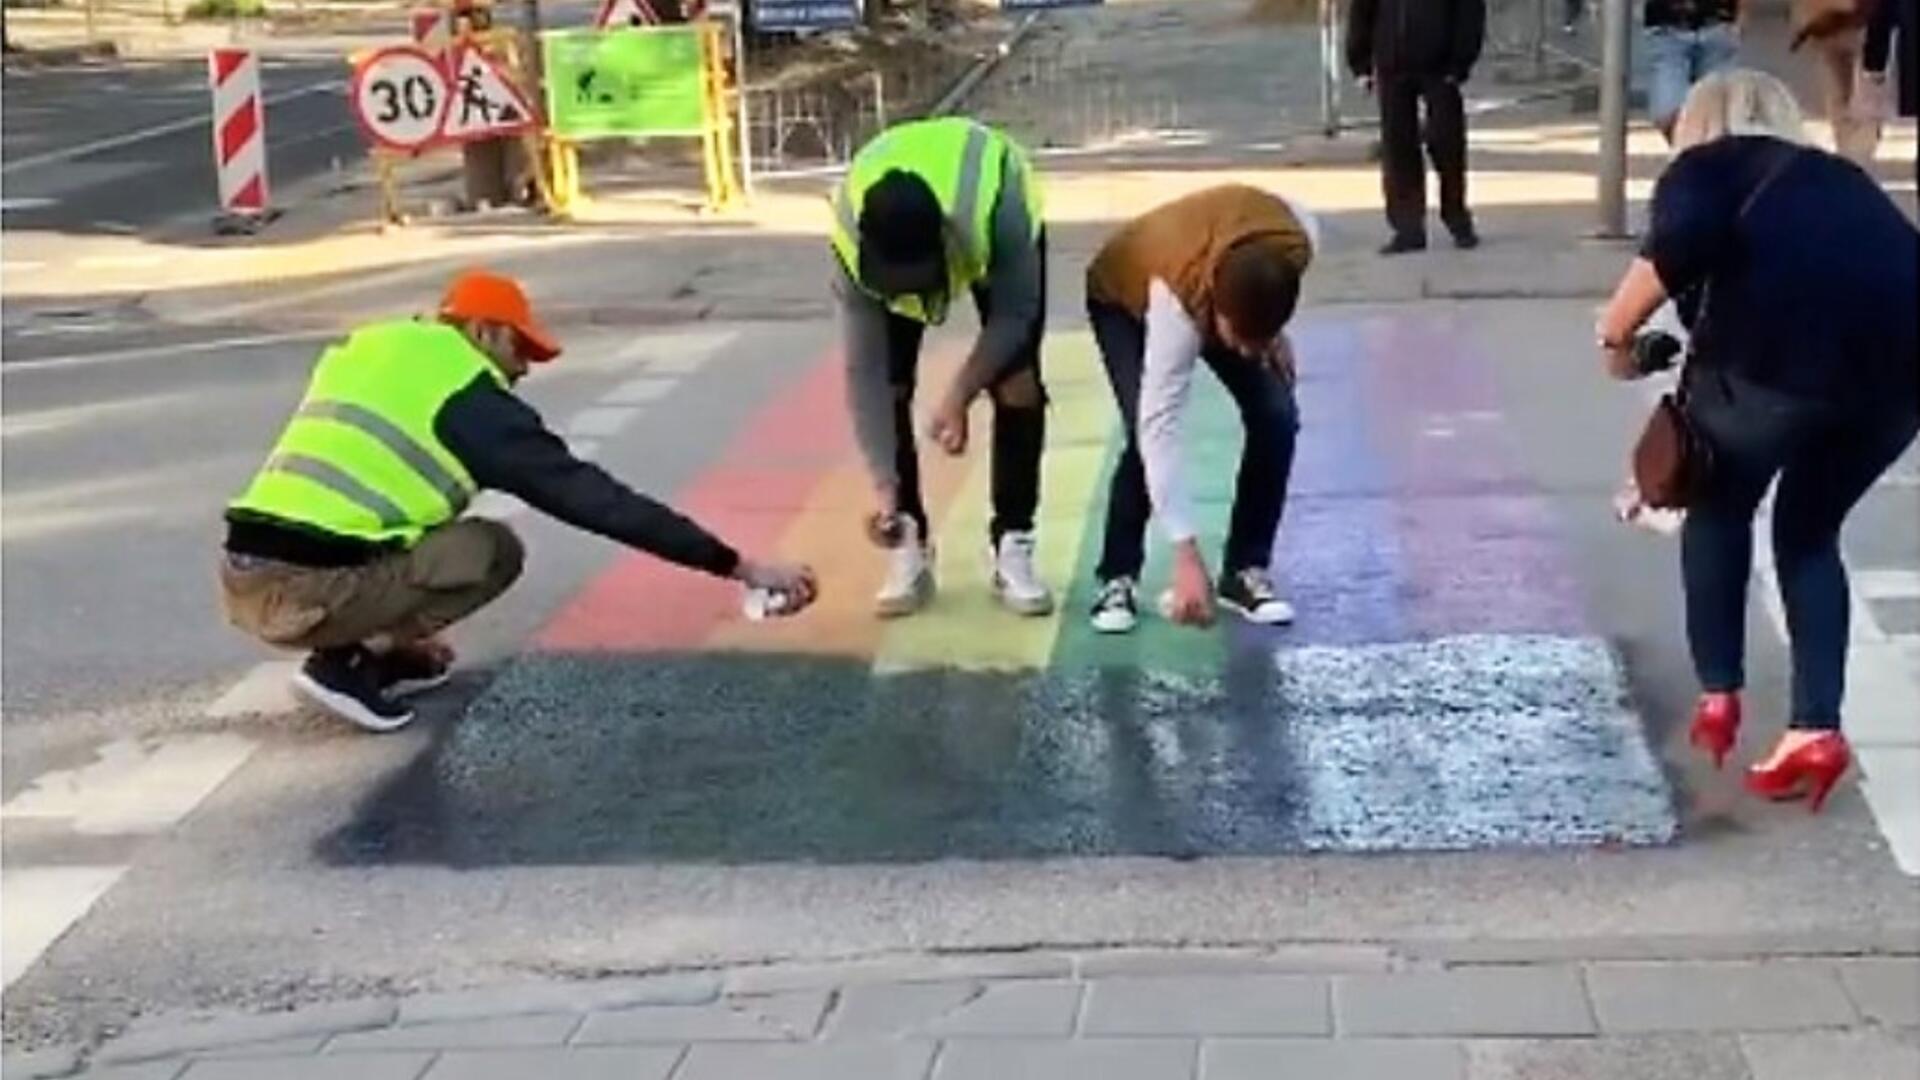 Beeld uit de video die de anti-LHBT-activisten zelf opnamen waarin ze de regenboogzebra overschilderen met zwarte verf